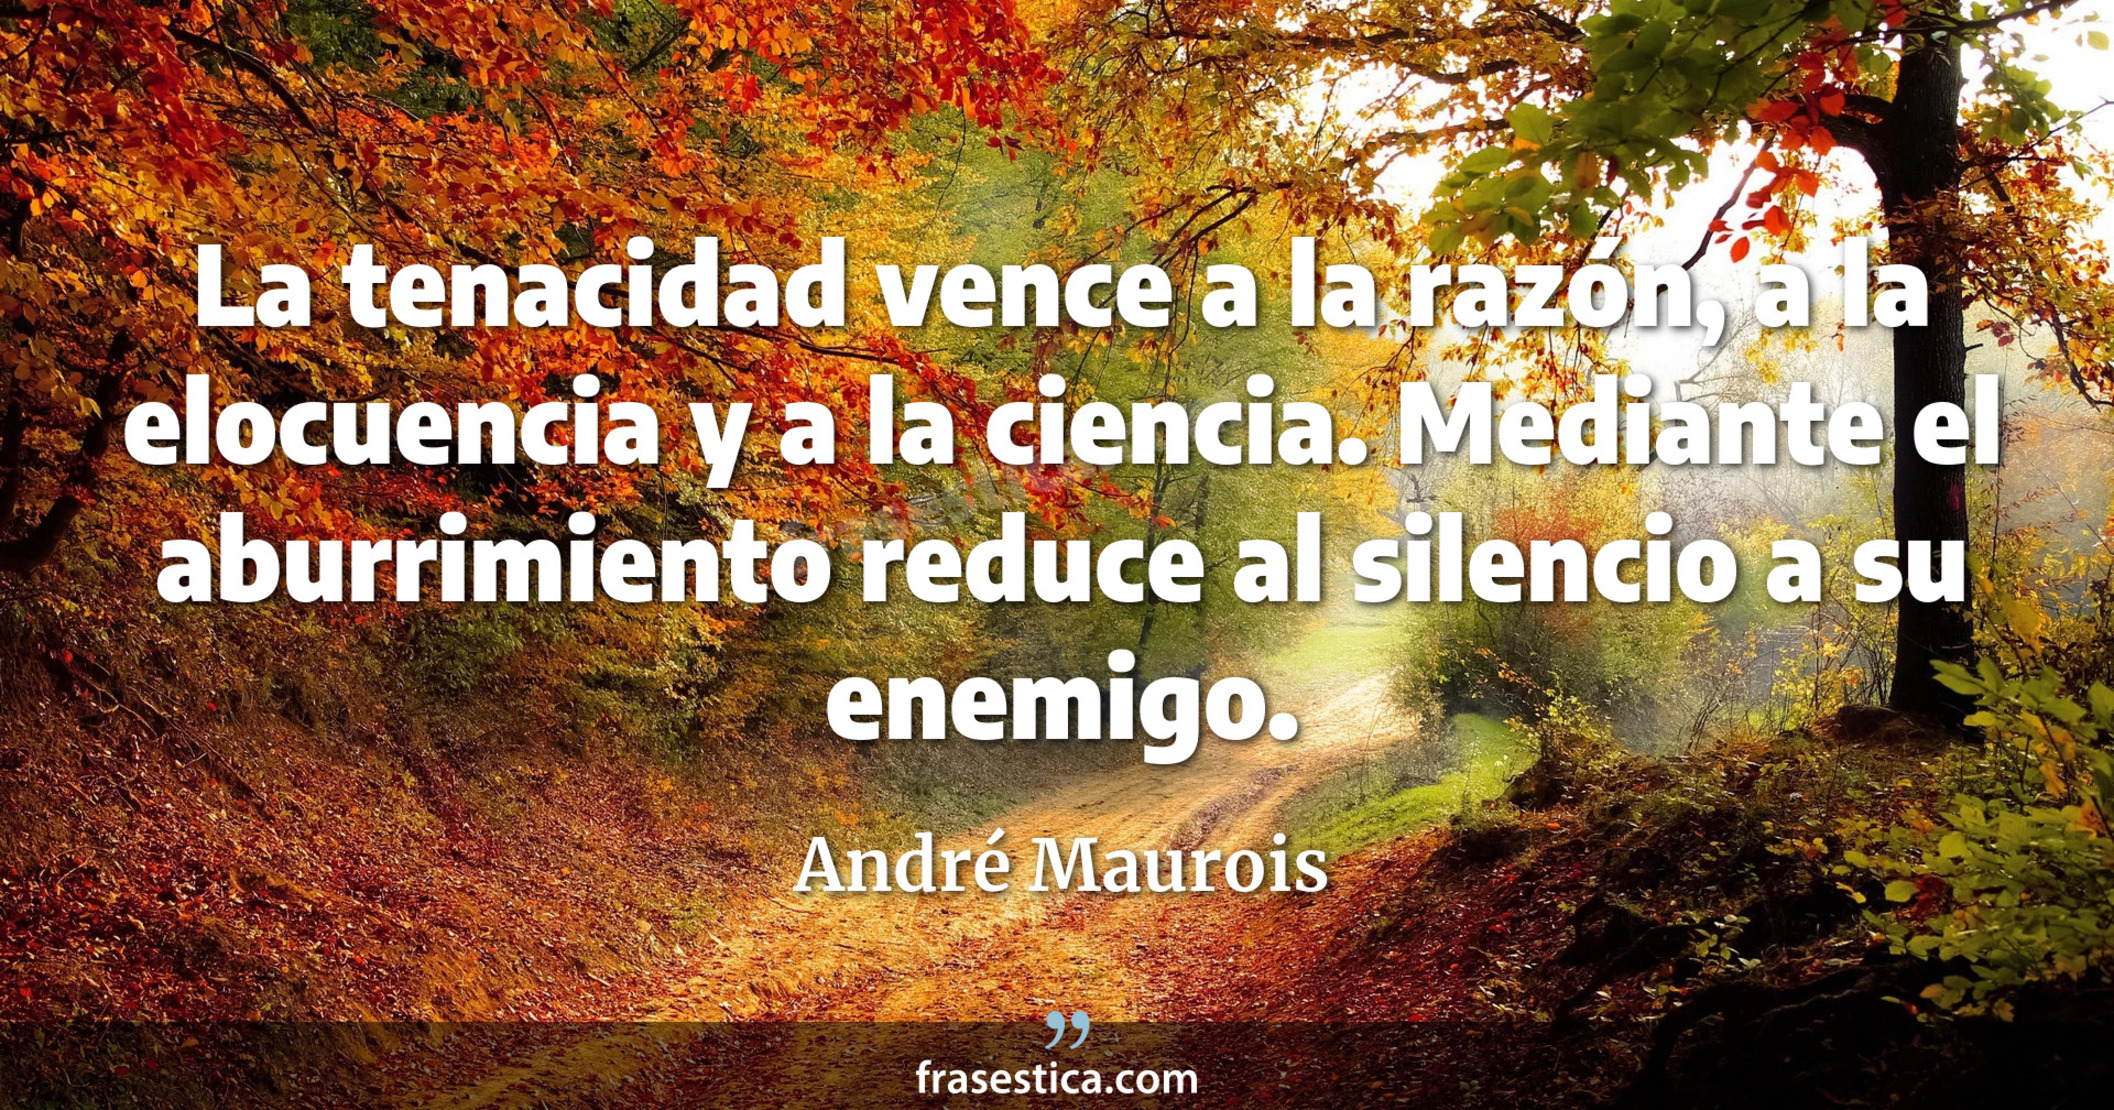 La tenacidad vence a la razón, a la elocuencia y a la ciencia. Mediante el aburrimiento reduce al silencio a su enemigo. - André Maurois